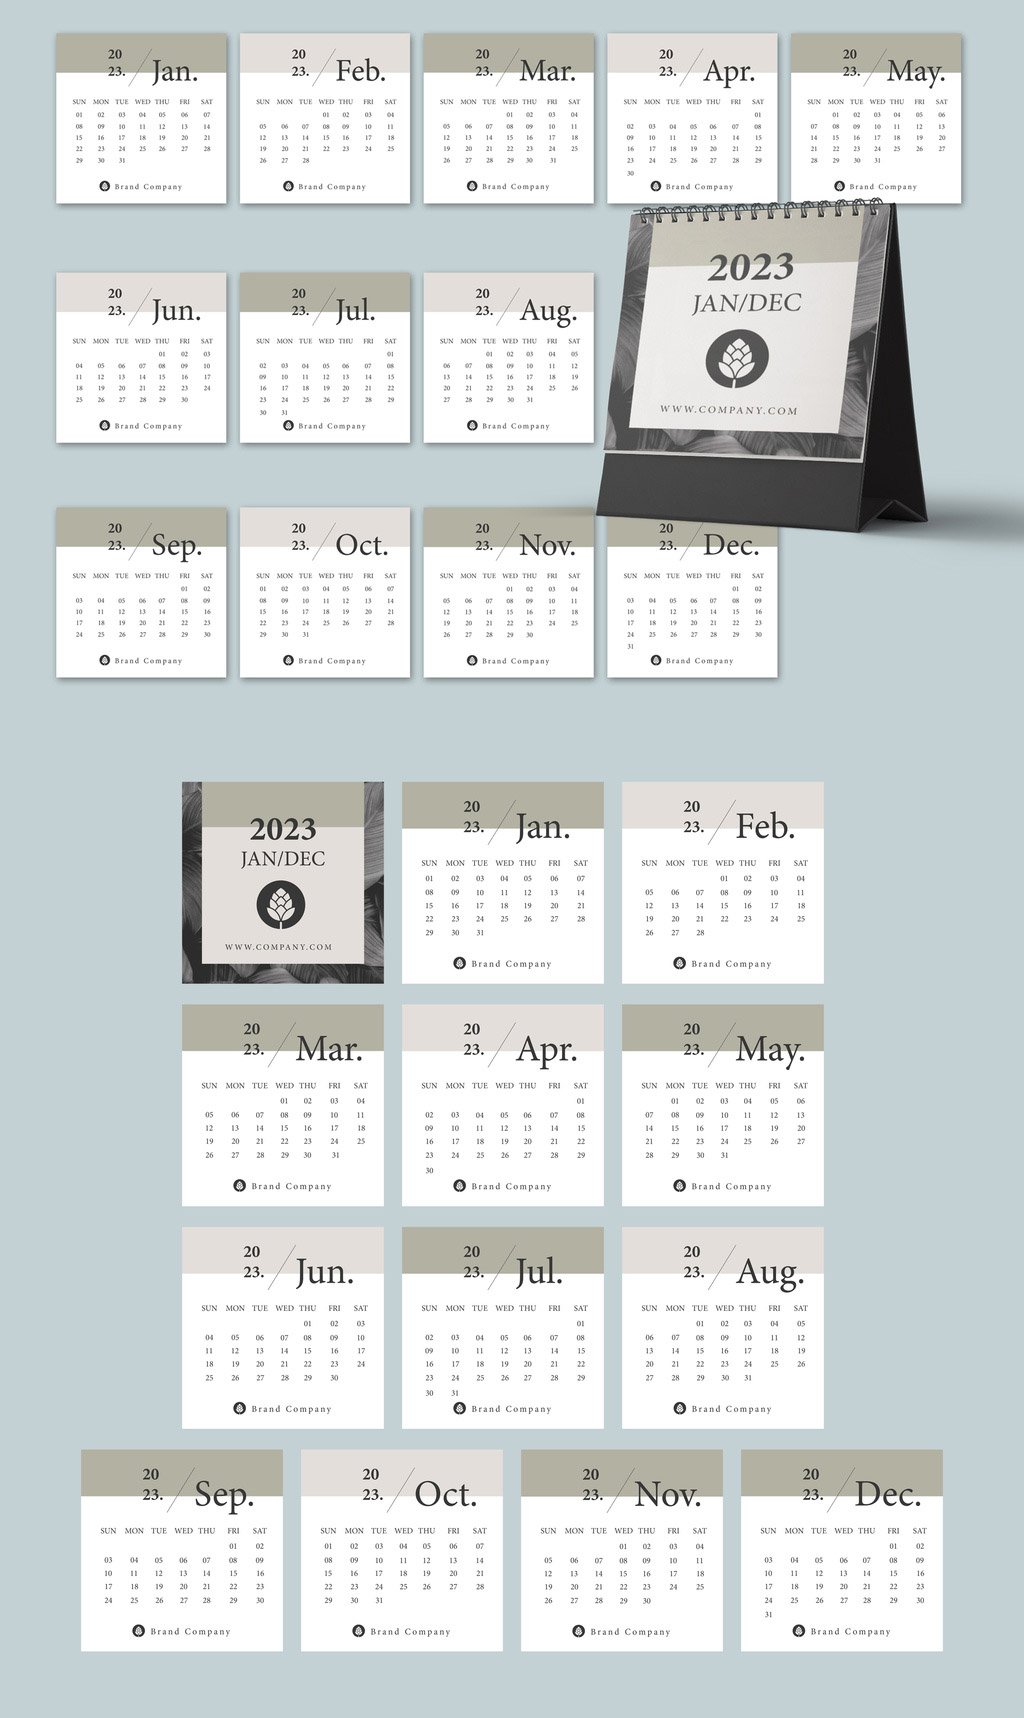 2023 Calendar Illustrator Template by Roverto Castillo